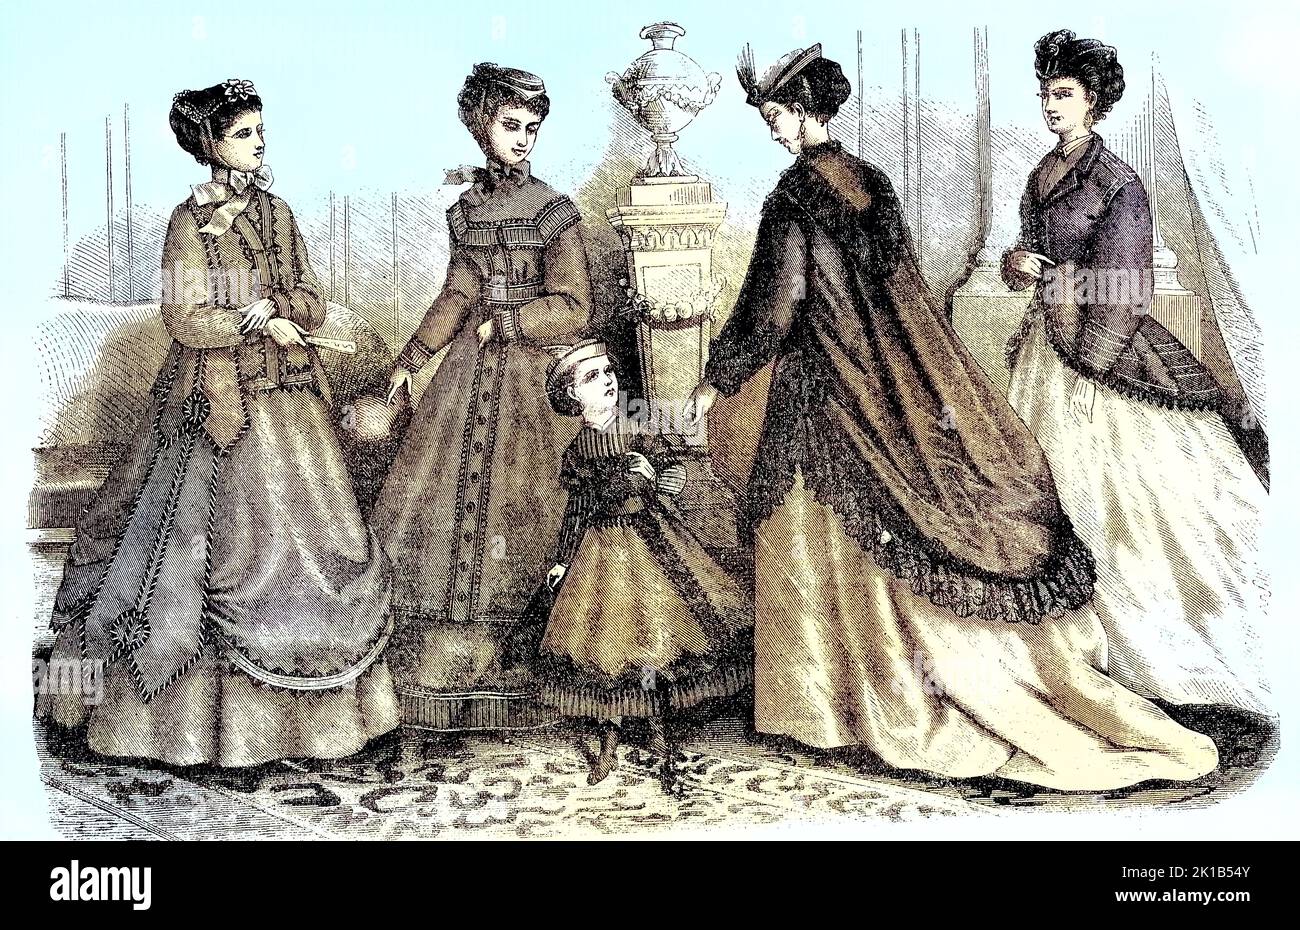 vier Frauen und zwei Mädchen in der aktuellen Frühlingsmode, Kostüme und Konfektionen von Madame Mary-Moison, Schals für Kleider aus den Malle des indes-Geschäfts, Marie-Antoinette-Unterröcke von Madame Bouland, 1869, Frankreich / vier Frauen und zwei Mädchen in aktueller Frühlingsmode, Kostümen und Ready-to-wear, von Madame Mary-Moison Tücher für Kleider von Malle des Indes Stores, Marie Antoinette Petticoats von Madame Bouland, 1869, Frankreich, Historisch, digital restaurierte Produktion einer Originalvorlage aus dem 19. Jahrhundert, genau Originaldatum nicht bekannt / historical, digital im Stockfoto